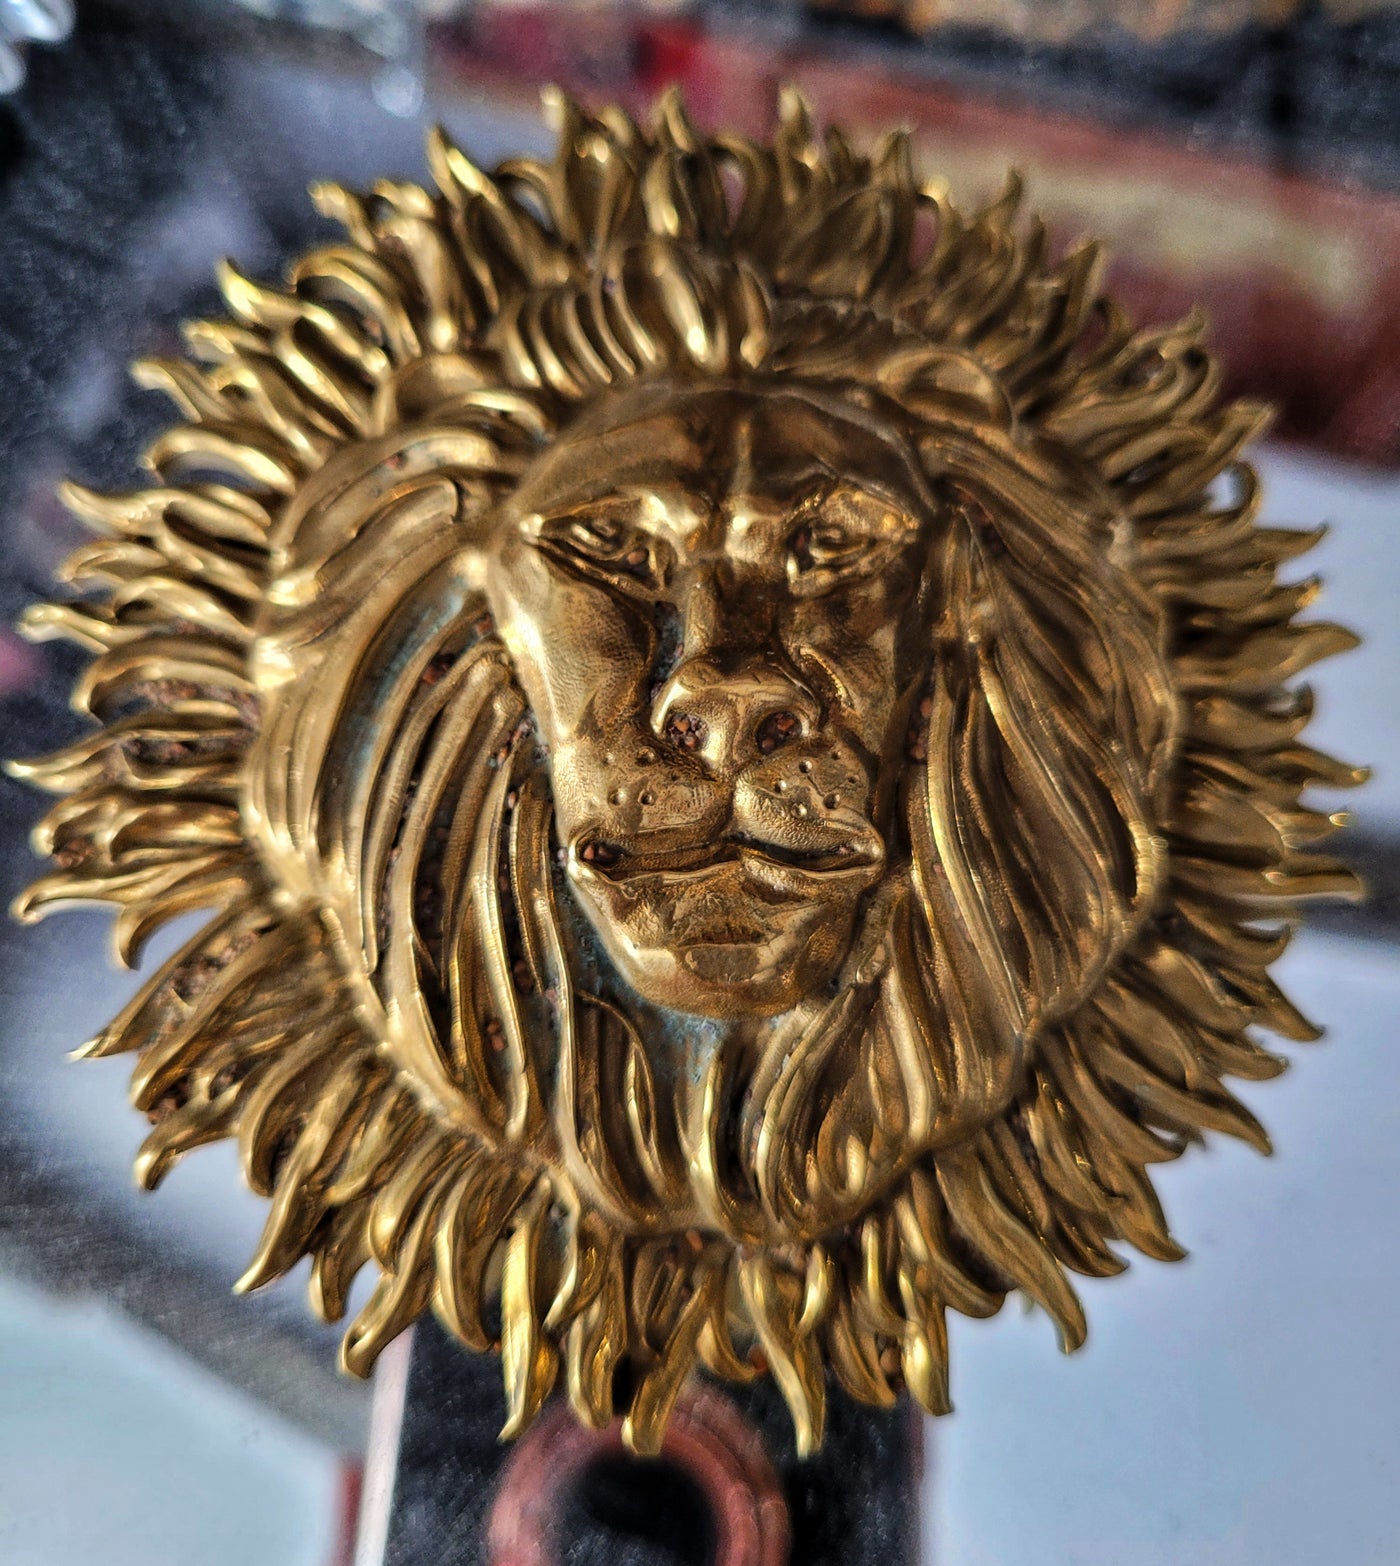 Goldkult Gürtelschnalle - The Lion - Edelmessing Poliert